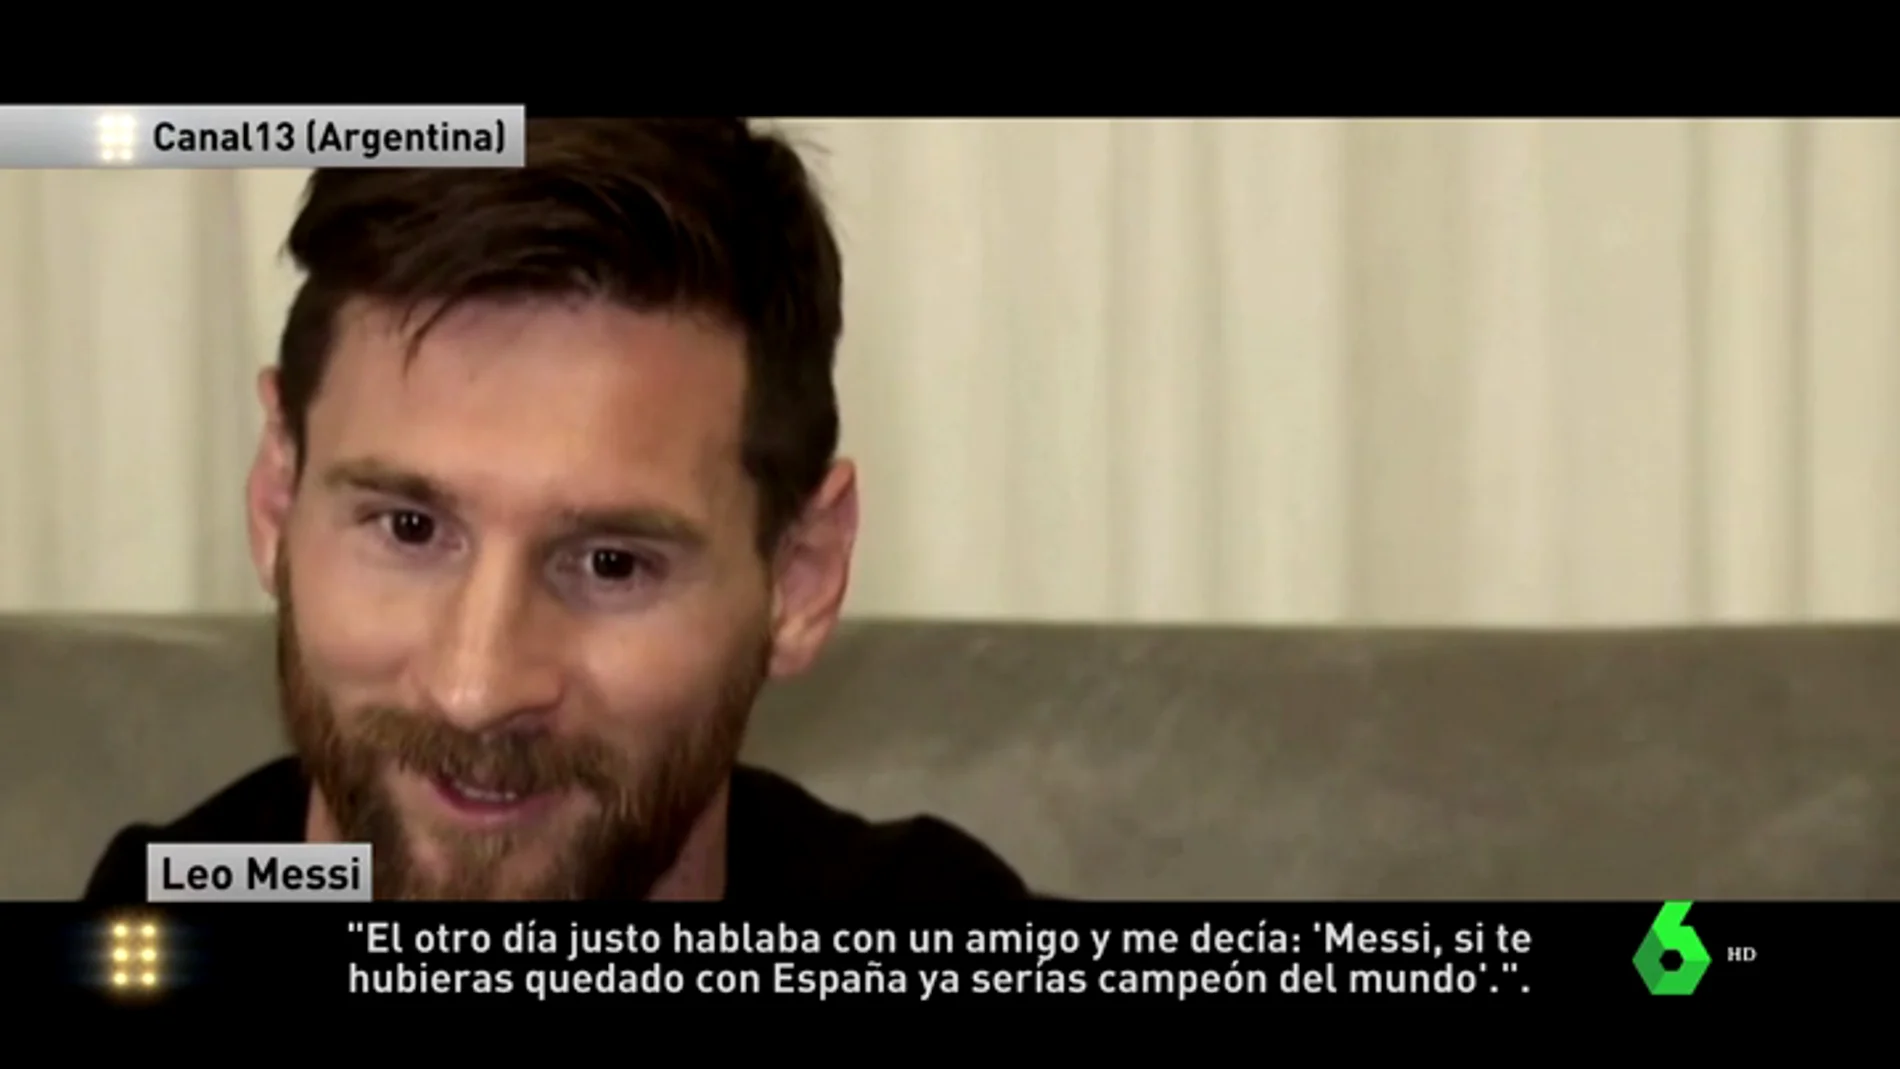 Leo Messi: "El otro día un amigo me decía 'si te hubieses quedado con España ya serías campeón del mundo'"